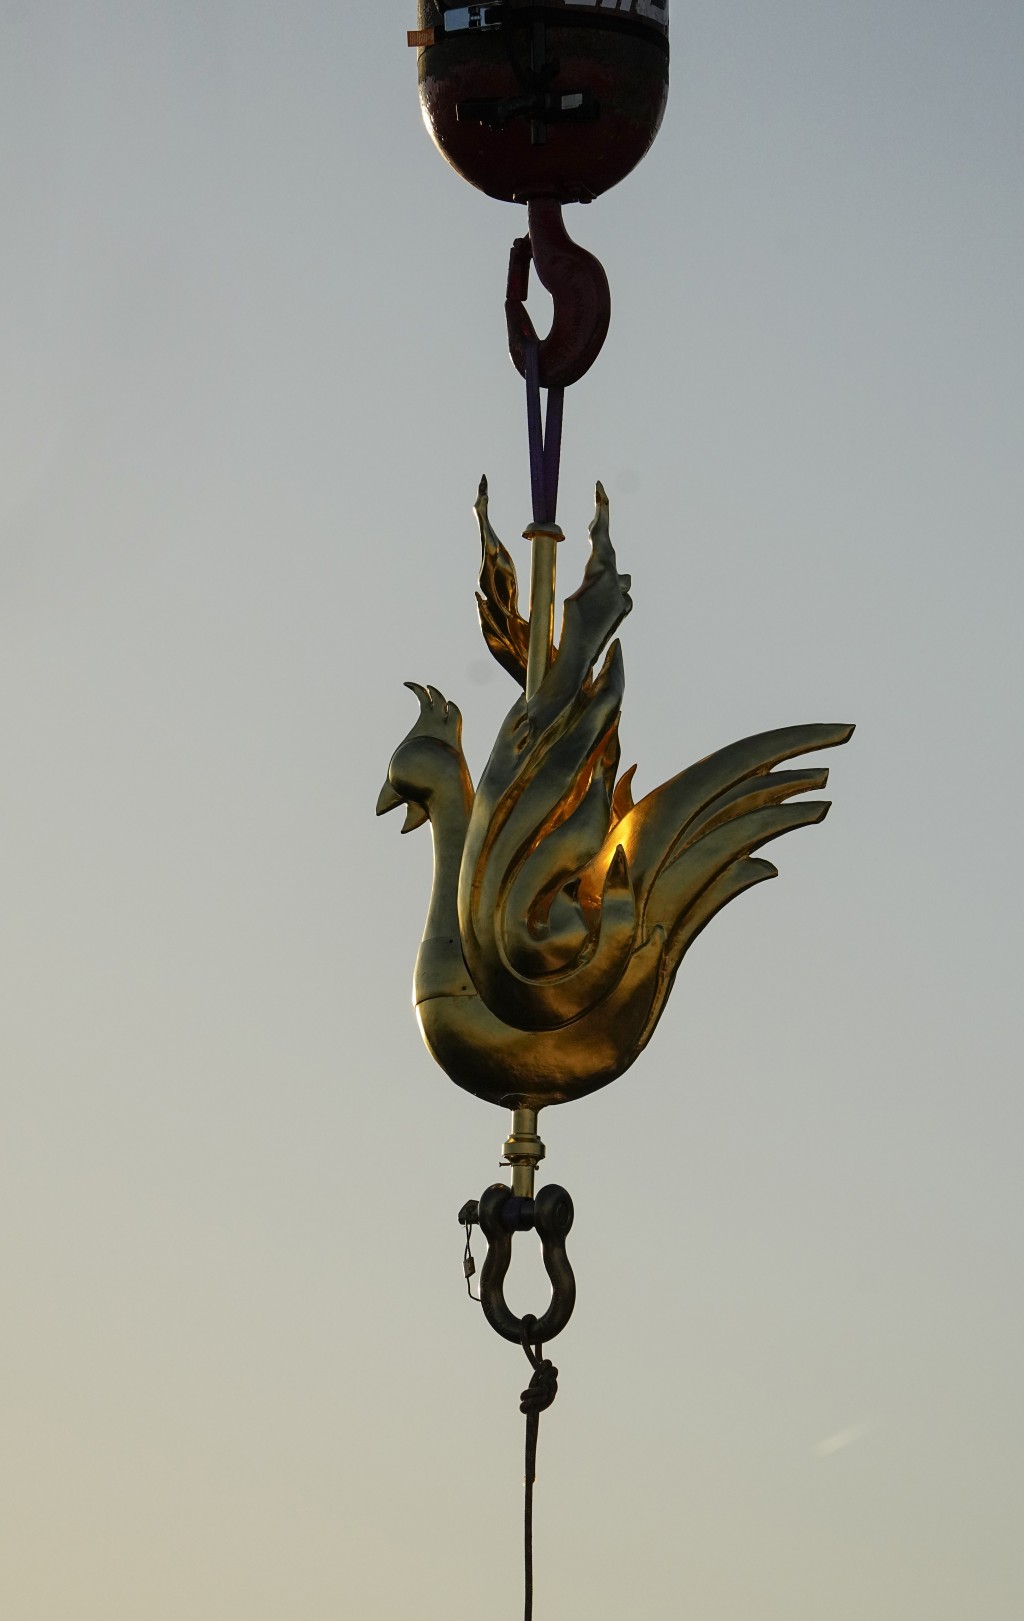 工作人員先將這個公雞風向標用吊車送抵巴黎聖母院的塔尖。美聯社